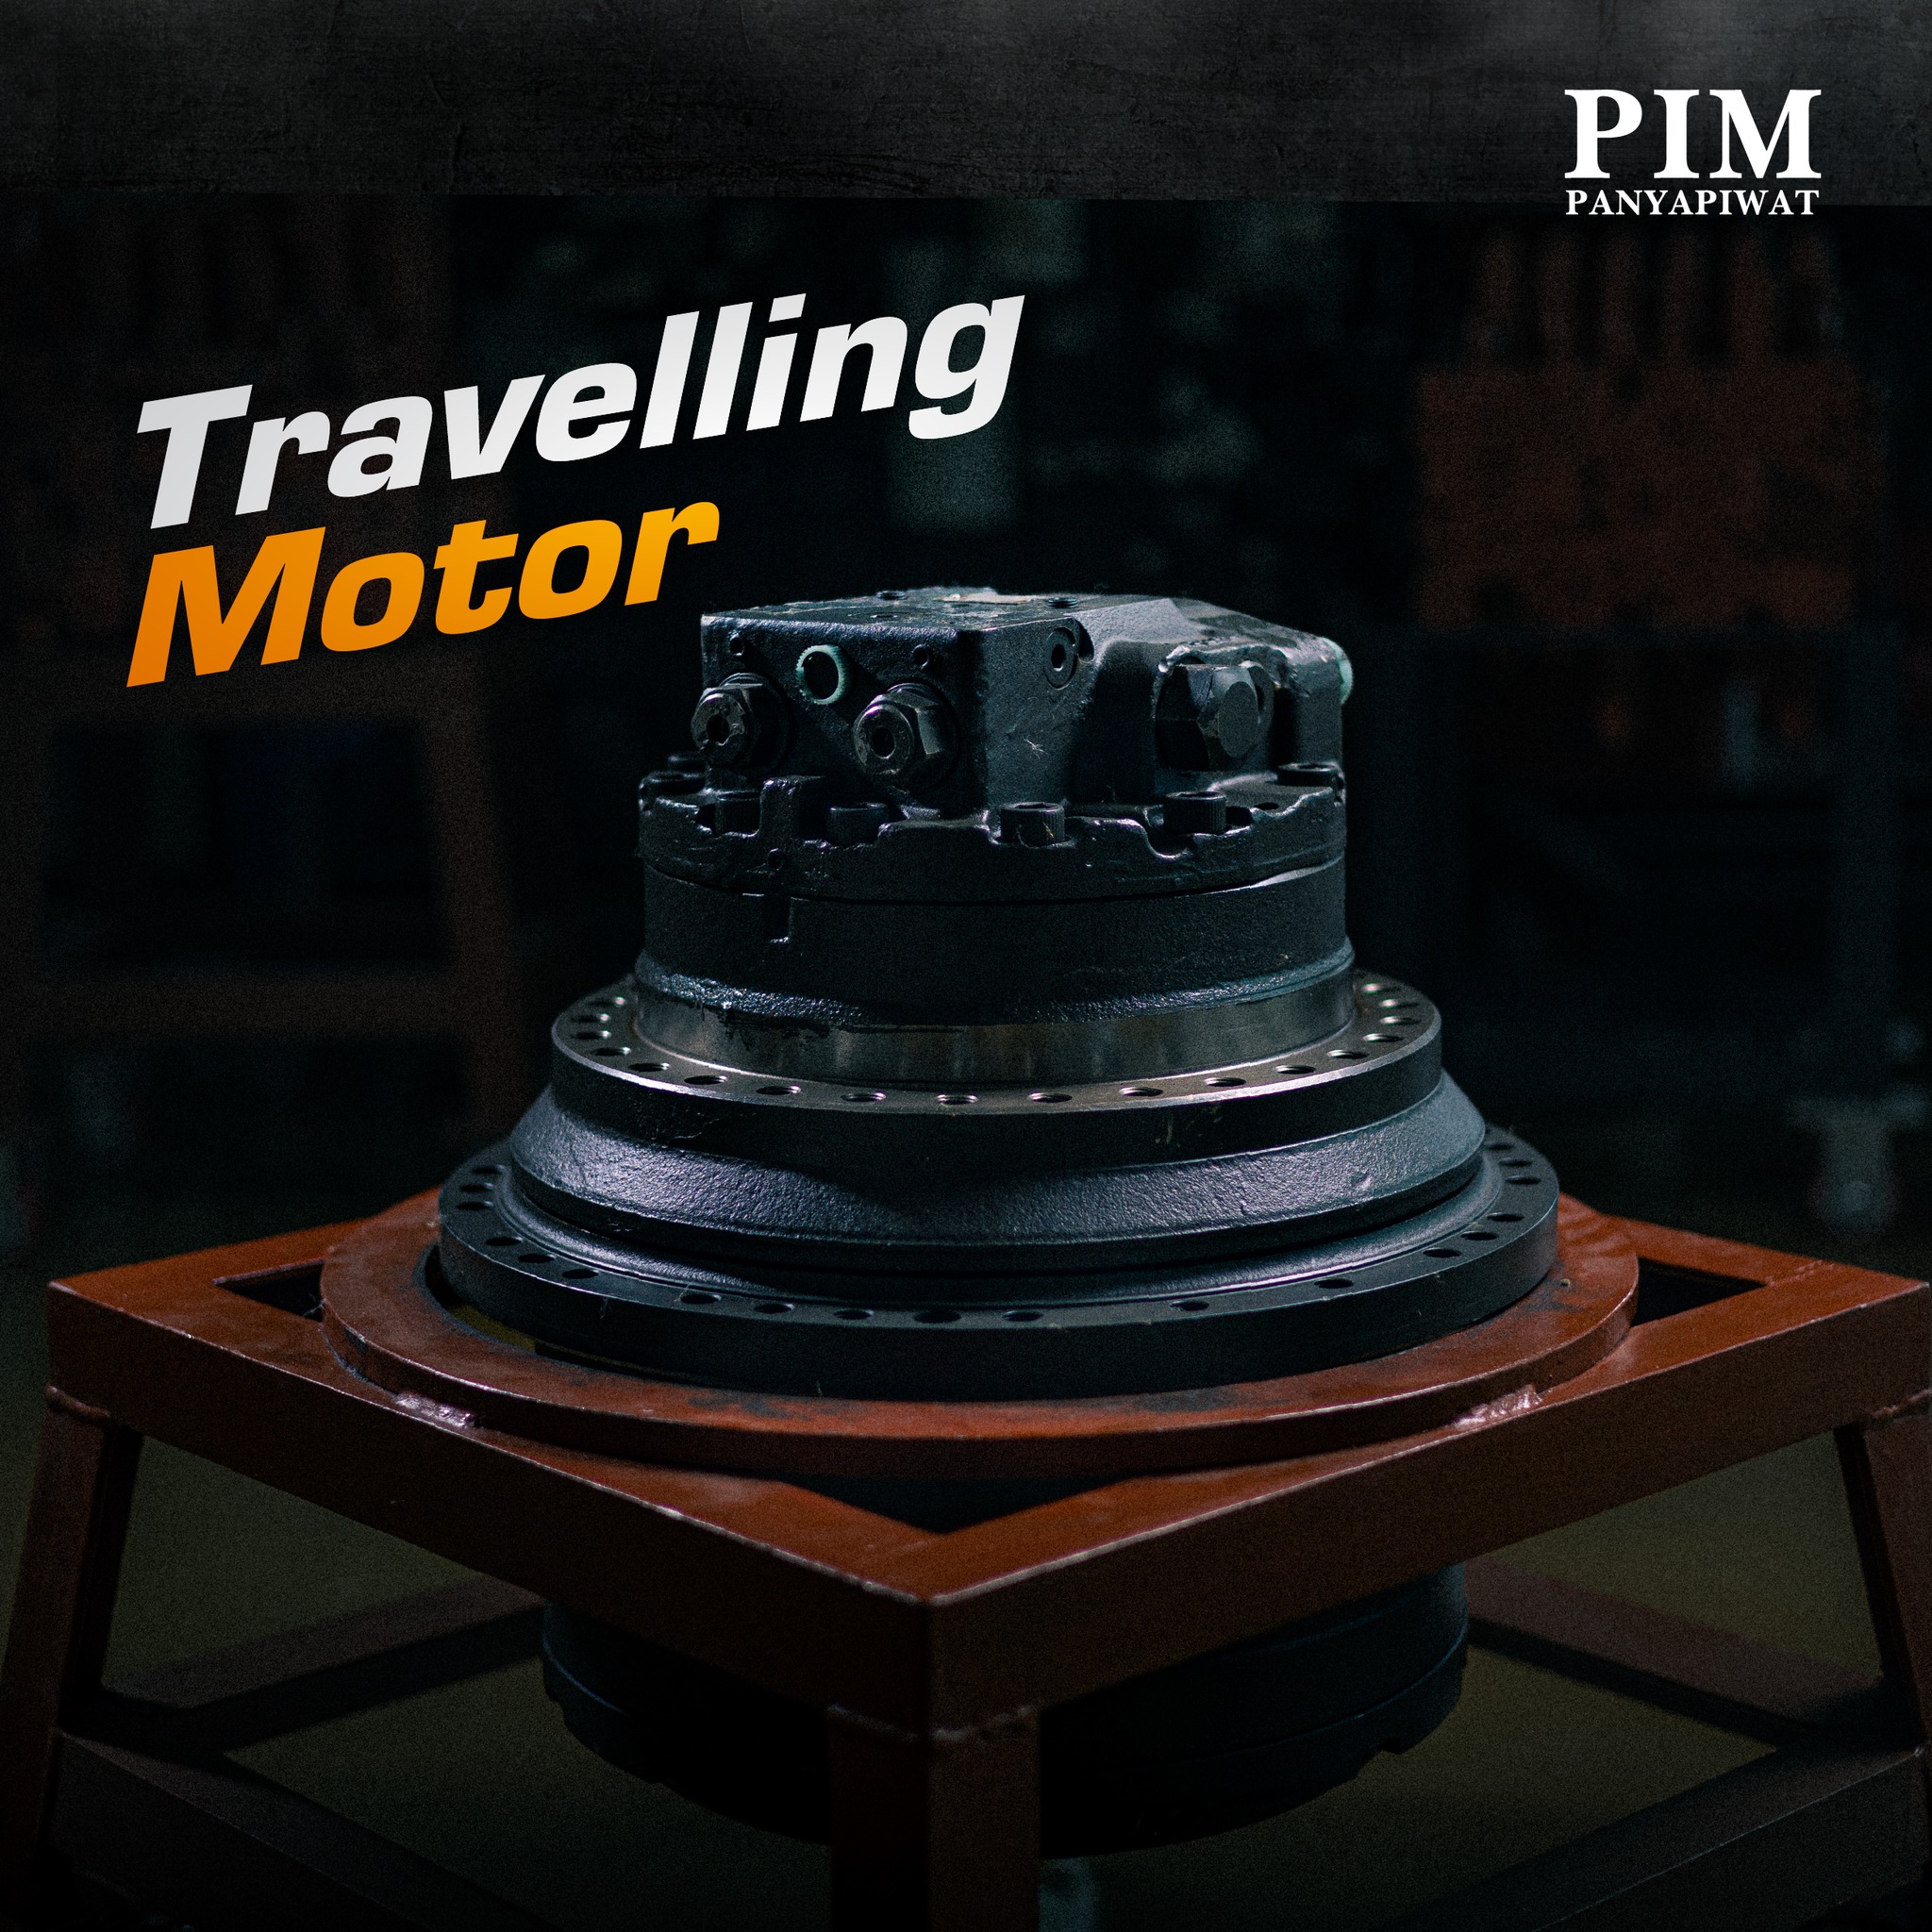 ระบบมอเตอร์การเคลื่อนที่ (Travelling Motor)